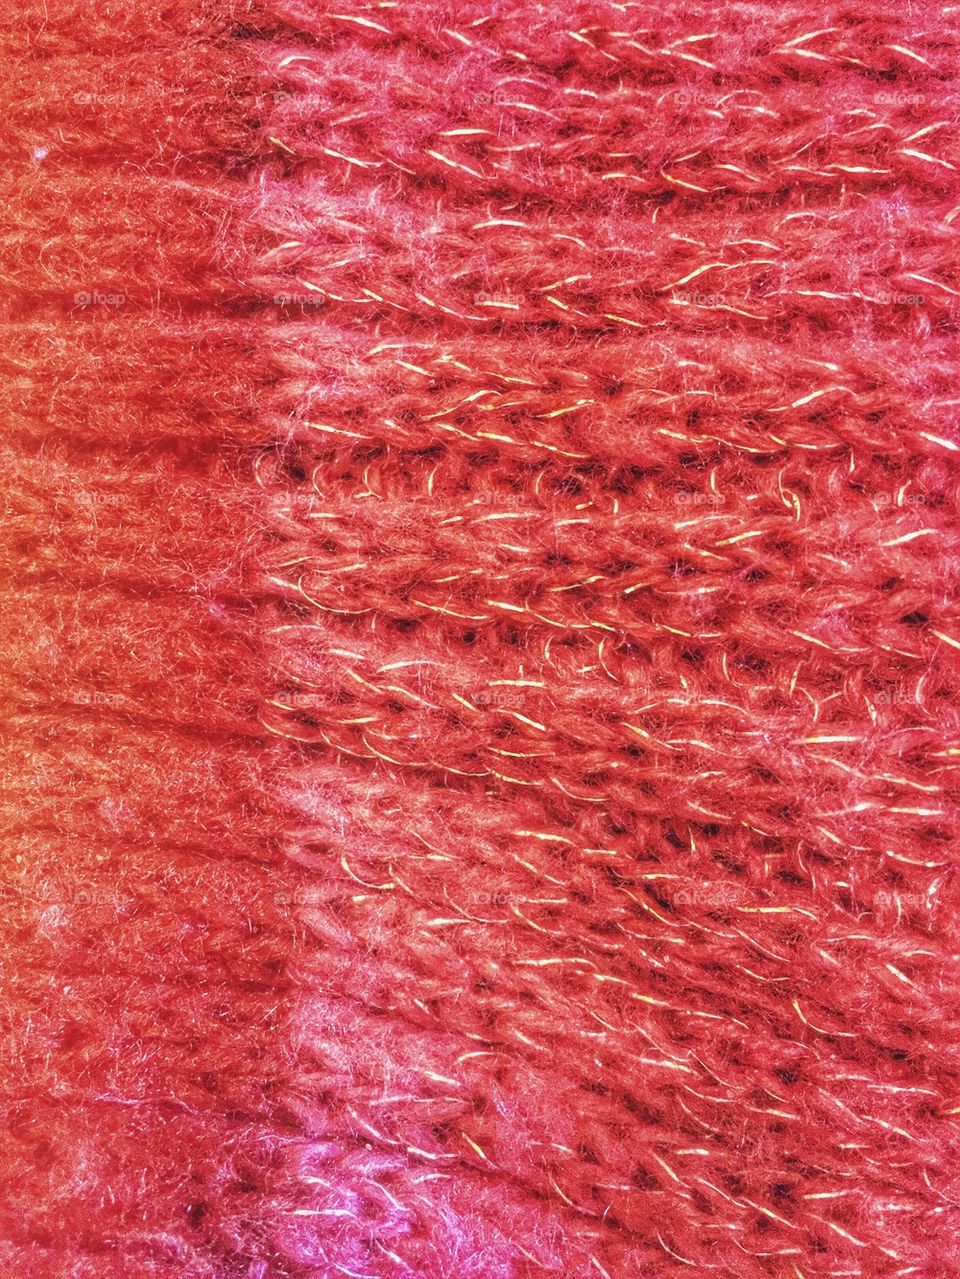 Reddish wool